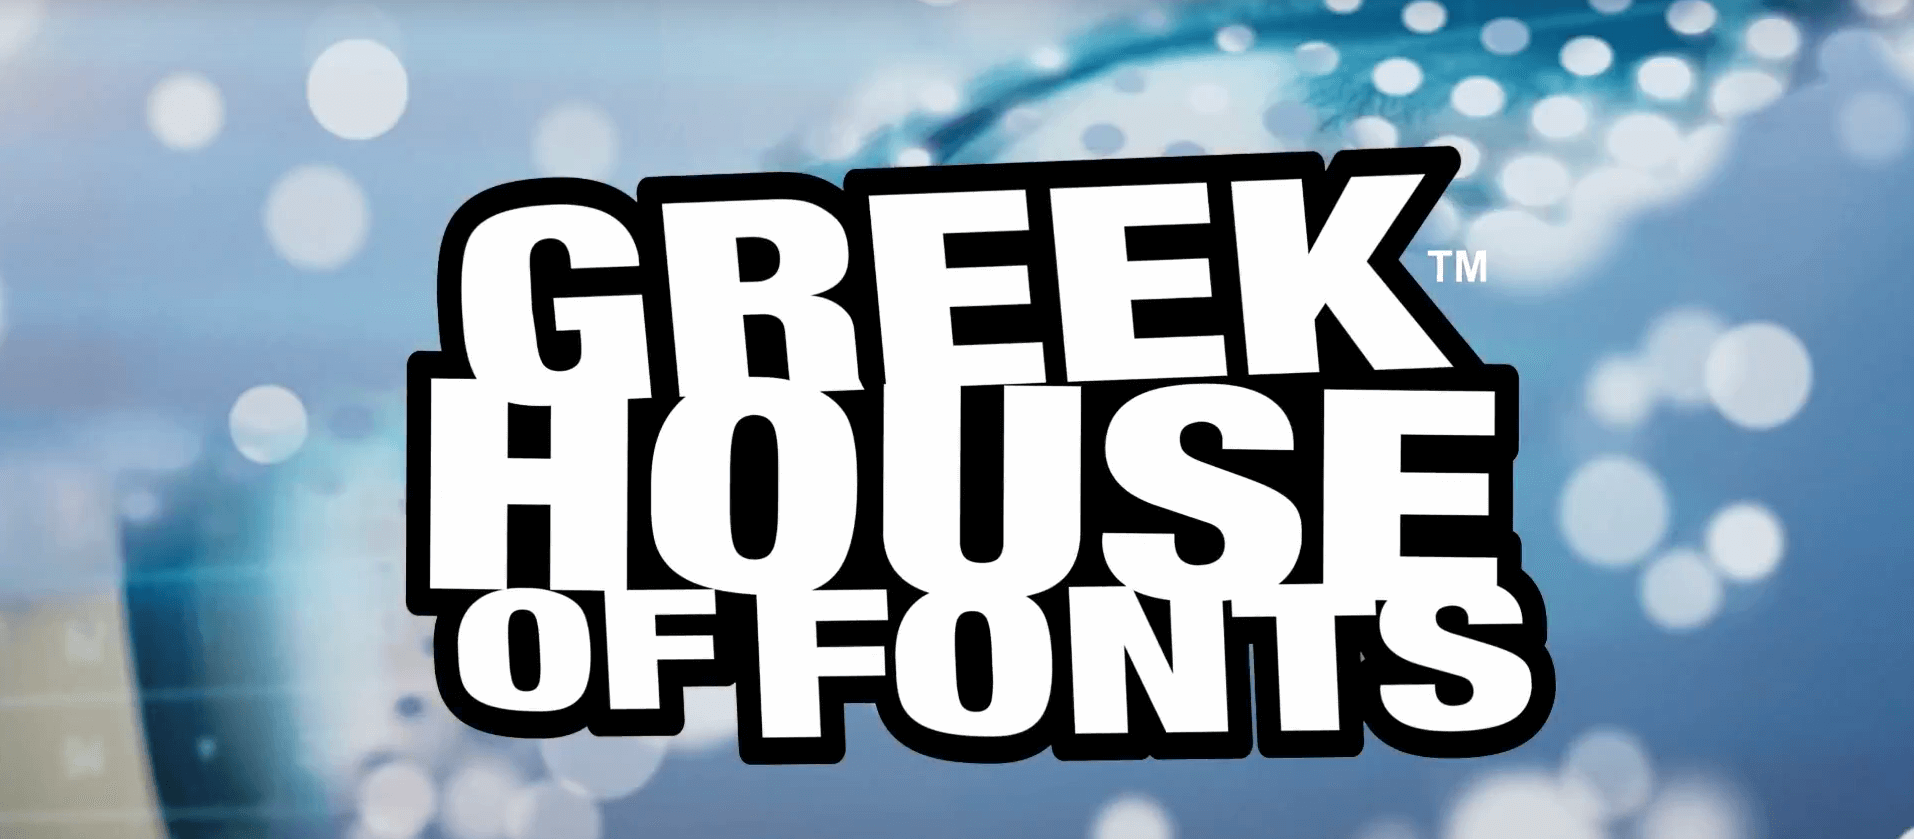 Greek Fonts-Blog